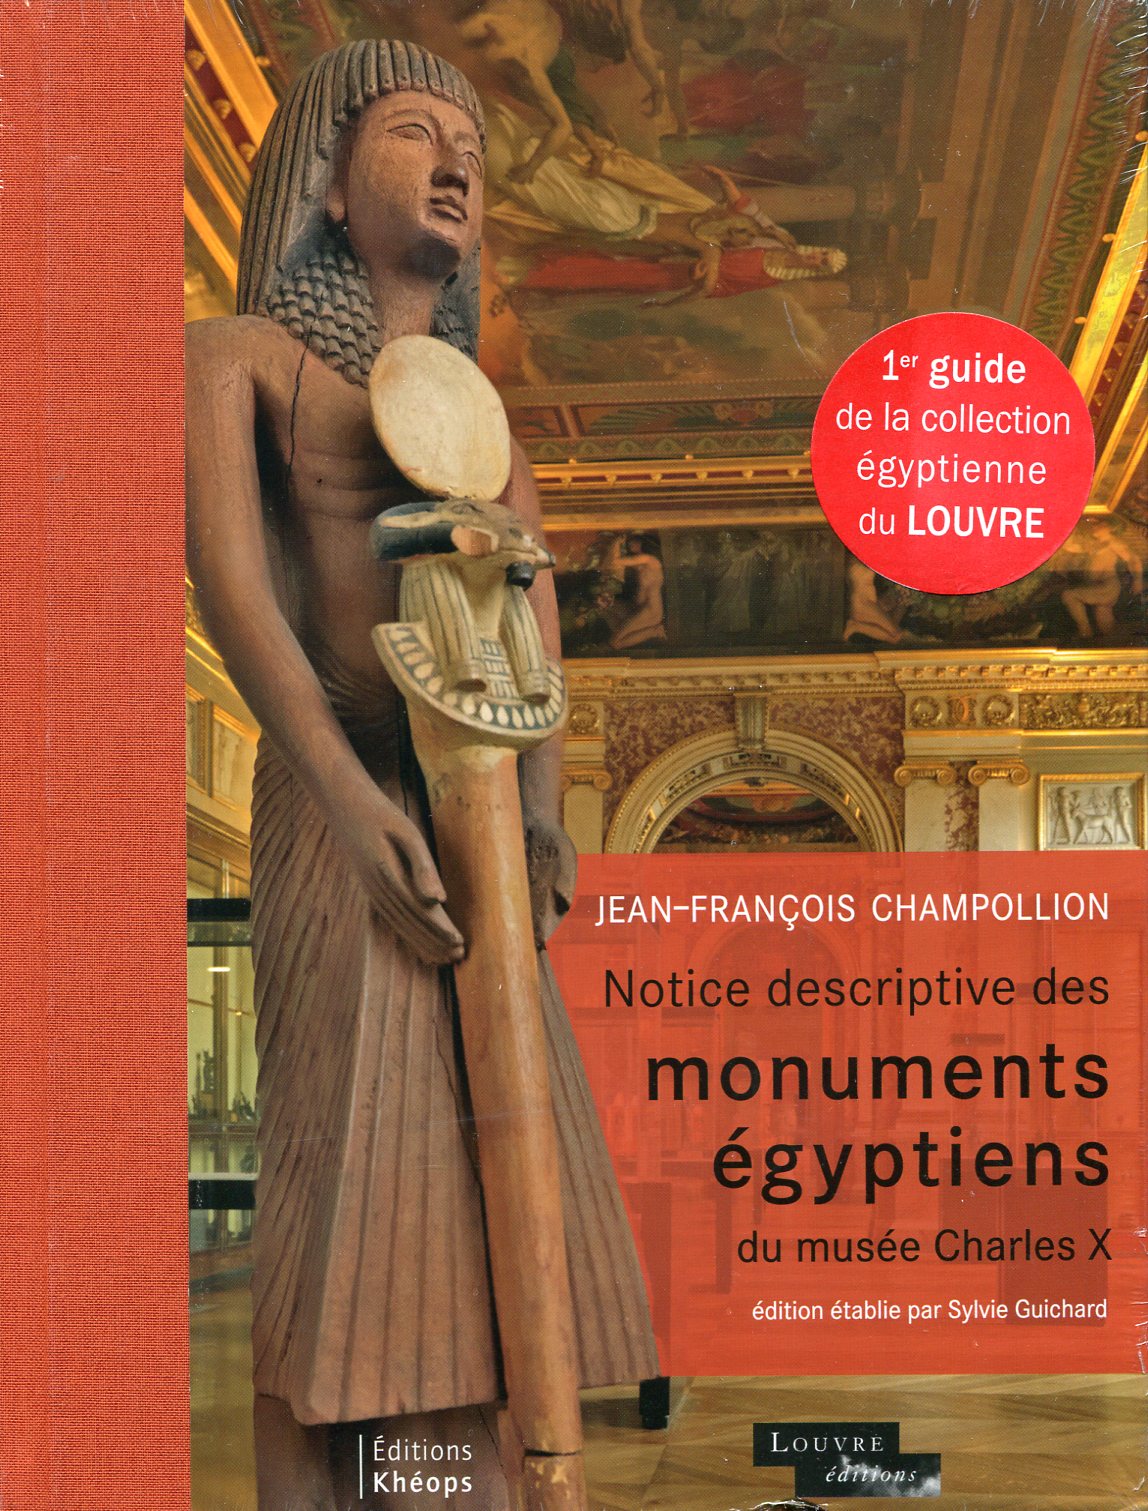 Notice descriptive des monuments égyptiens du musée Charles X, 2013, 368 p.